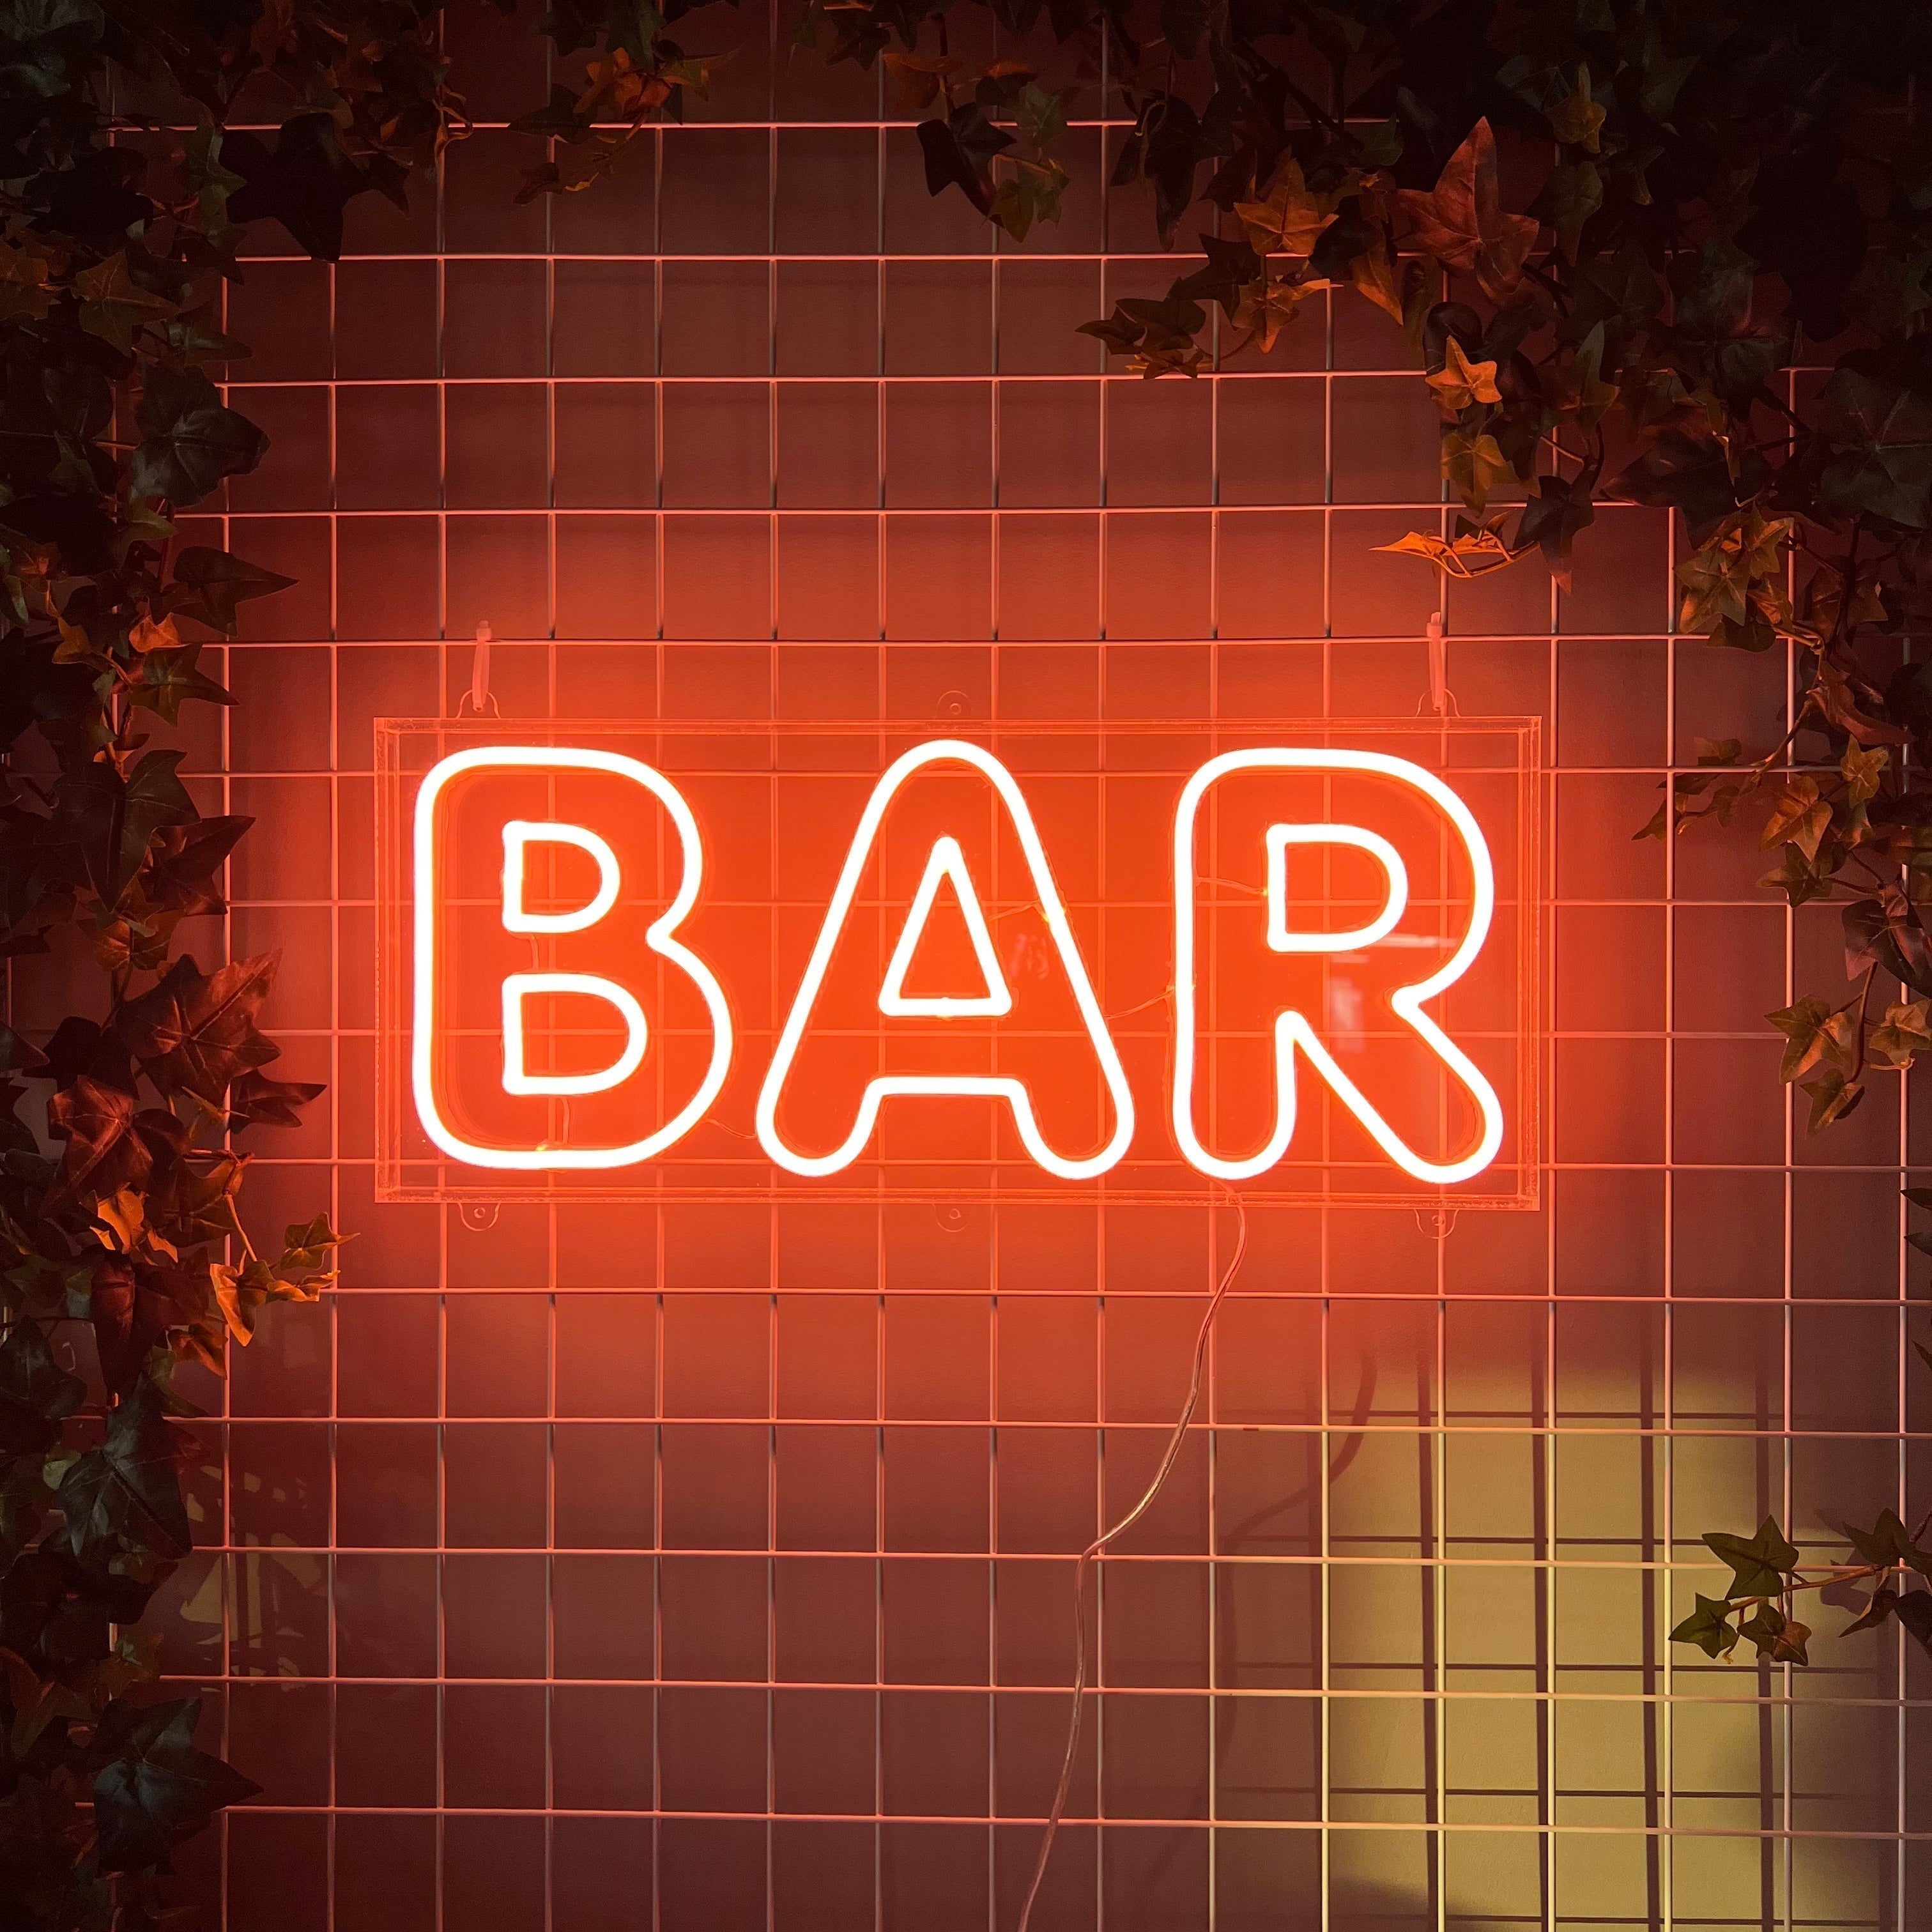 Skap en levende og trendy atmosfære med vårt 'bar' led-neonskilt, ideelt for innendørs og utendørs bruk takket være sin vanntette design. Lys opp din bar med et skilt som kombinerer moderne estetikk med praktisk funksjonalitet.